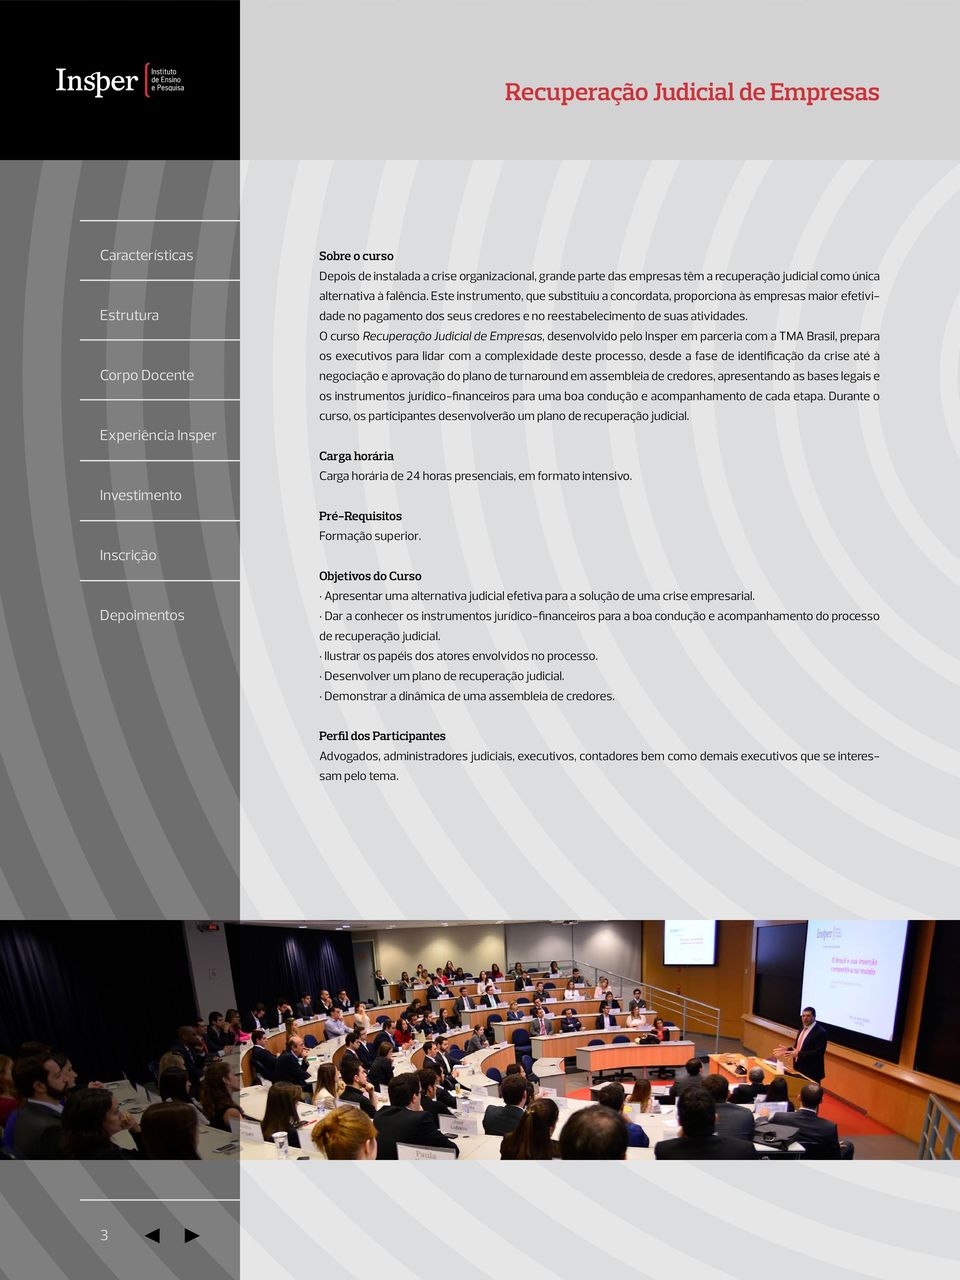 O curso Recuperação Judicial de Empresas, desenvolvido pelo Insper em parceria com a TMA Brasil, prepara os executivos para lidar com a complexidade deste processo, desde a fase de identificação da